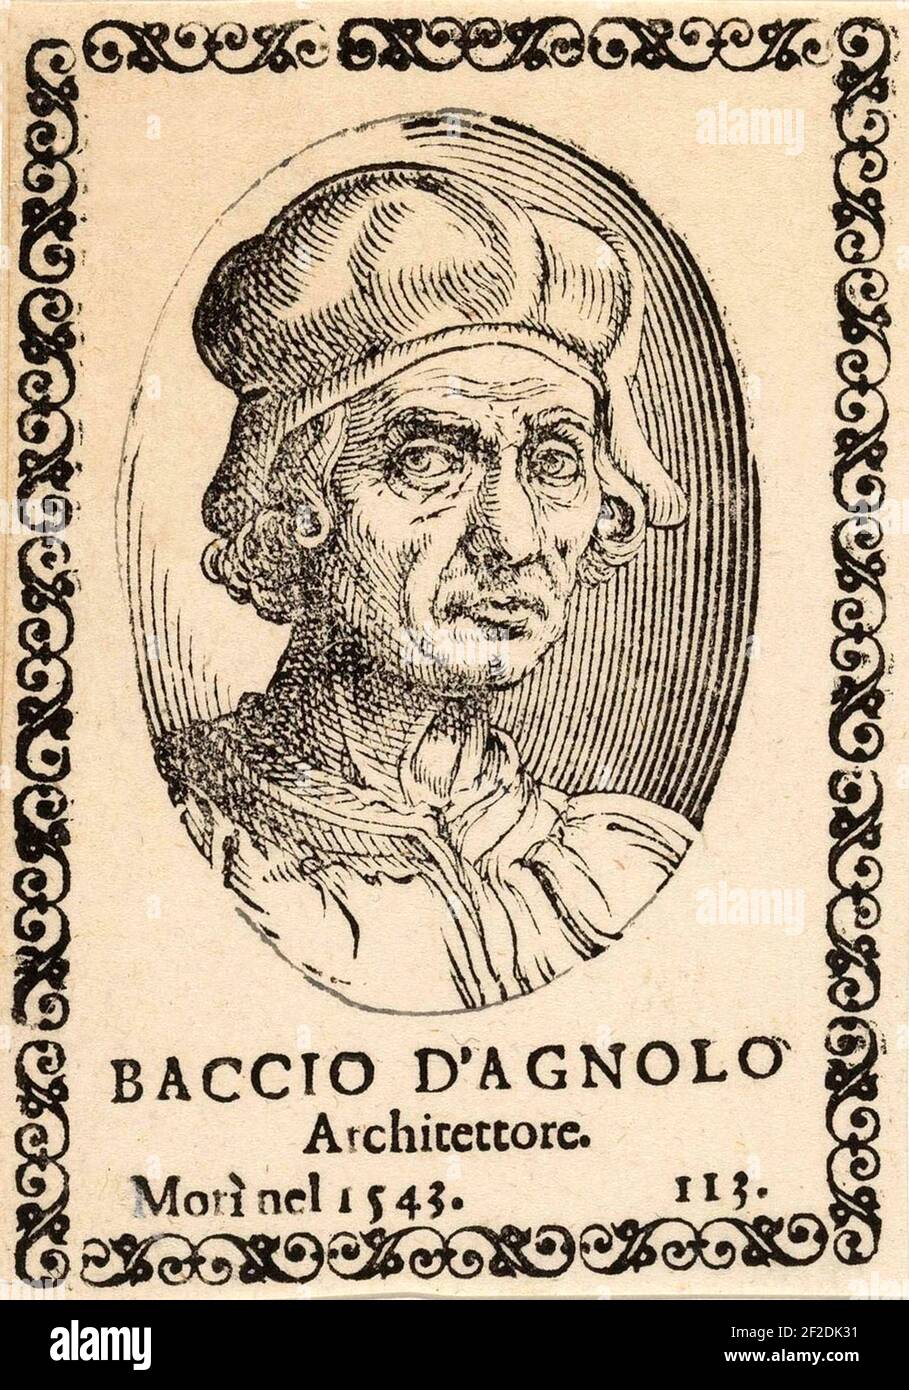 1500 ca, ITALIA : l'architetto e scultore italiano BACCIO D'AGNOLO ( Bartolomeo d'Agnolo Baglioni , 1462 - 1543 ). Incisione ritratto da un libro LE VITE di Giorgio Vasari , 1568 ediction . Incisore sconosciuto . - ARTE - ARCHITETTO - ARCHITETTURA - ARCHITETTURA - ARTI - Ritratto - ritratto - incisione - RINASCIMENTO - RINASCIMENTO - SCULTORE - SCULTURA - SCULTURA --- Archivio GBB Foto Stock